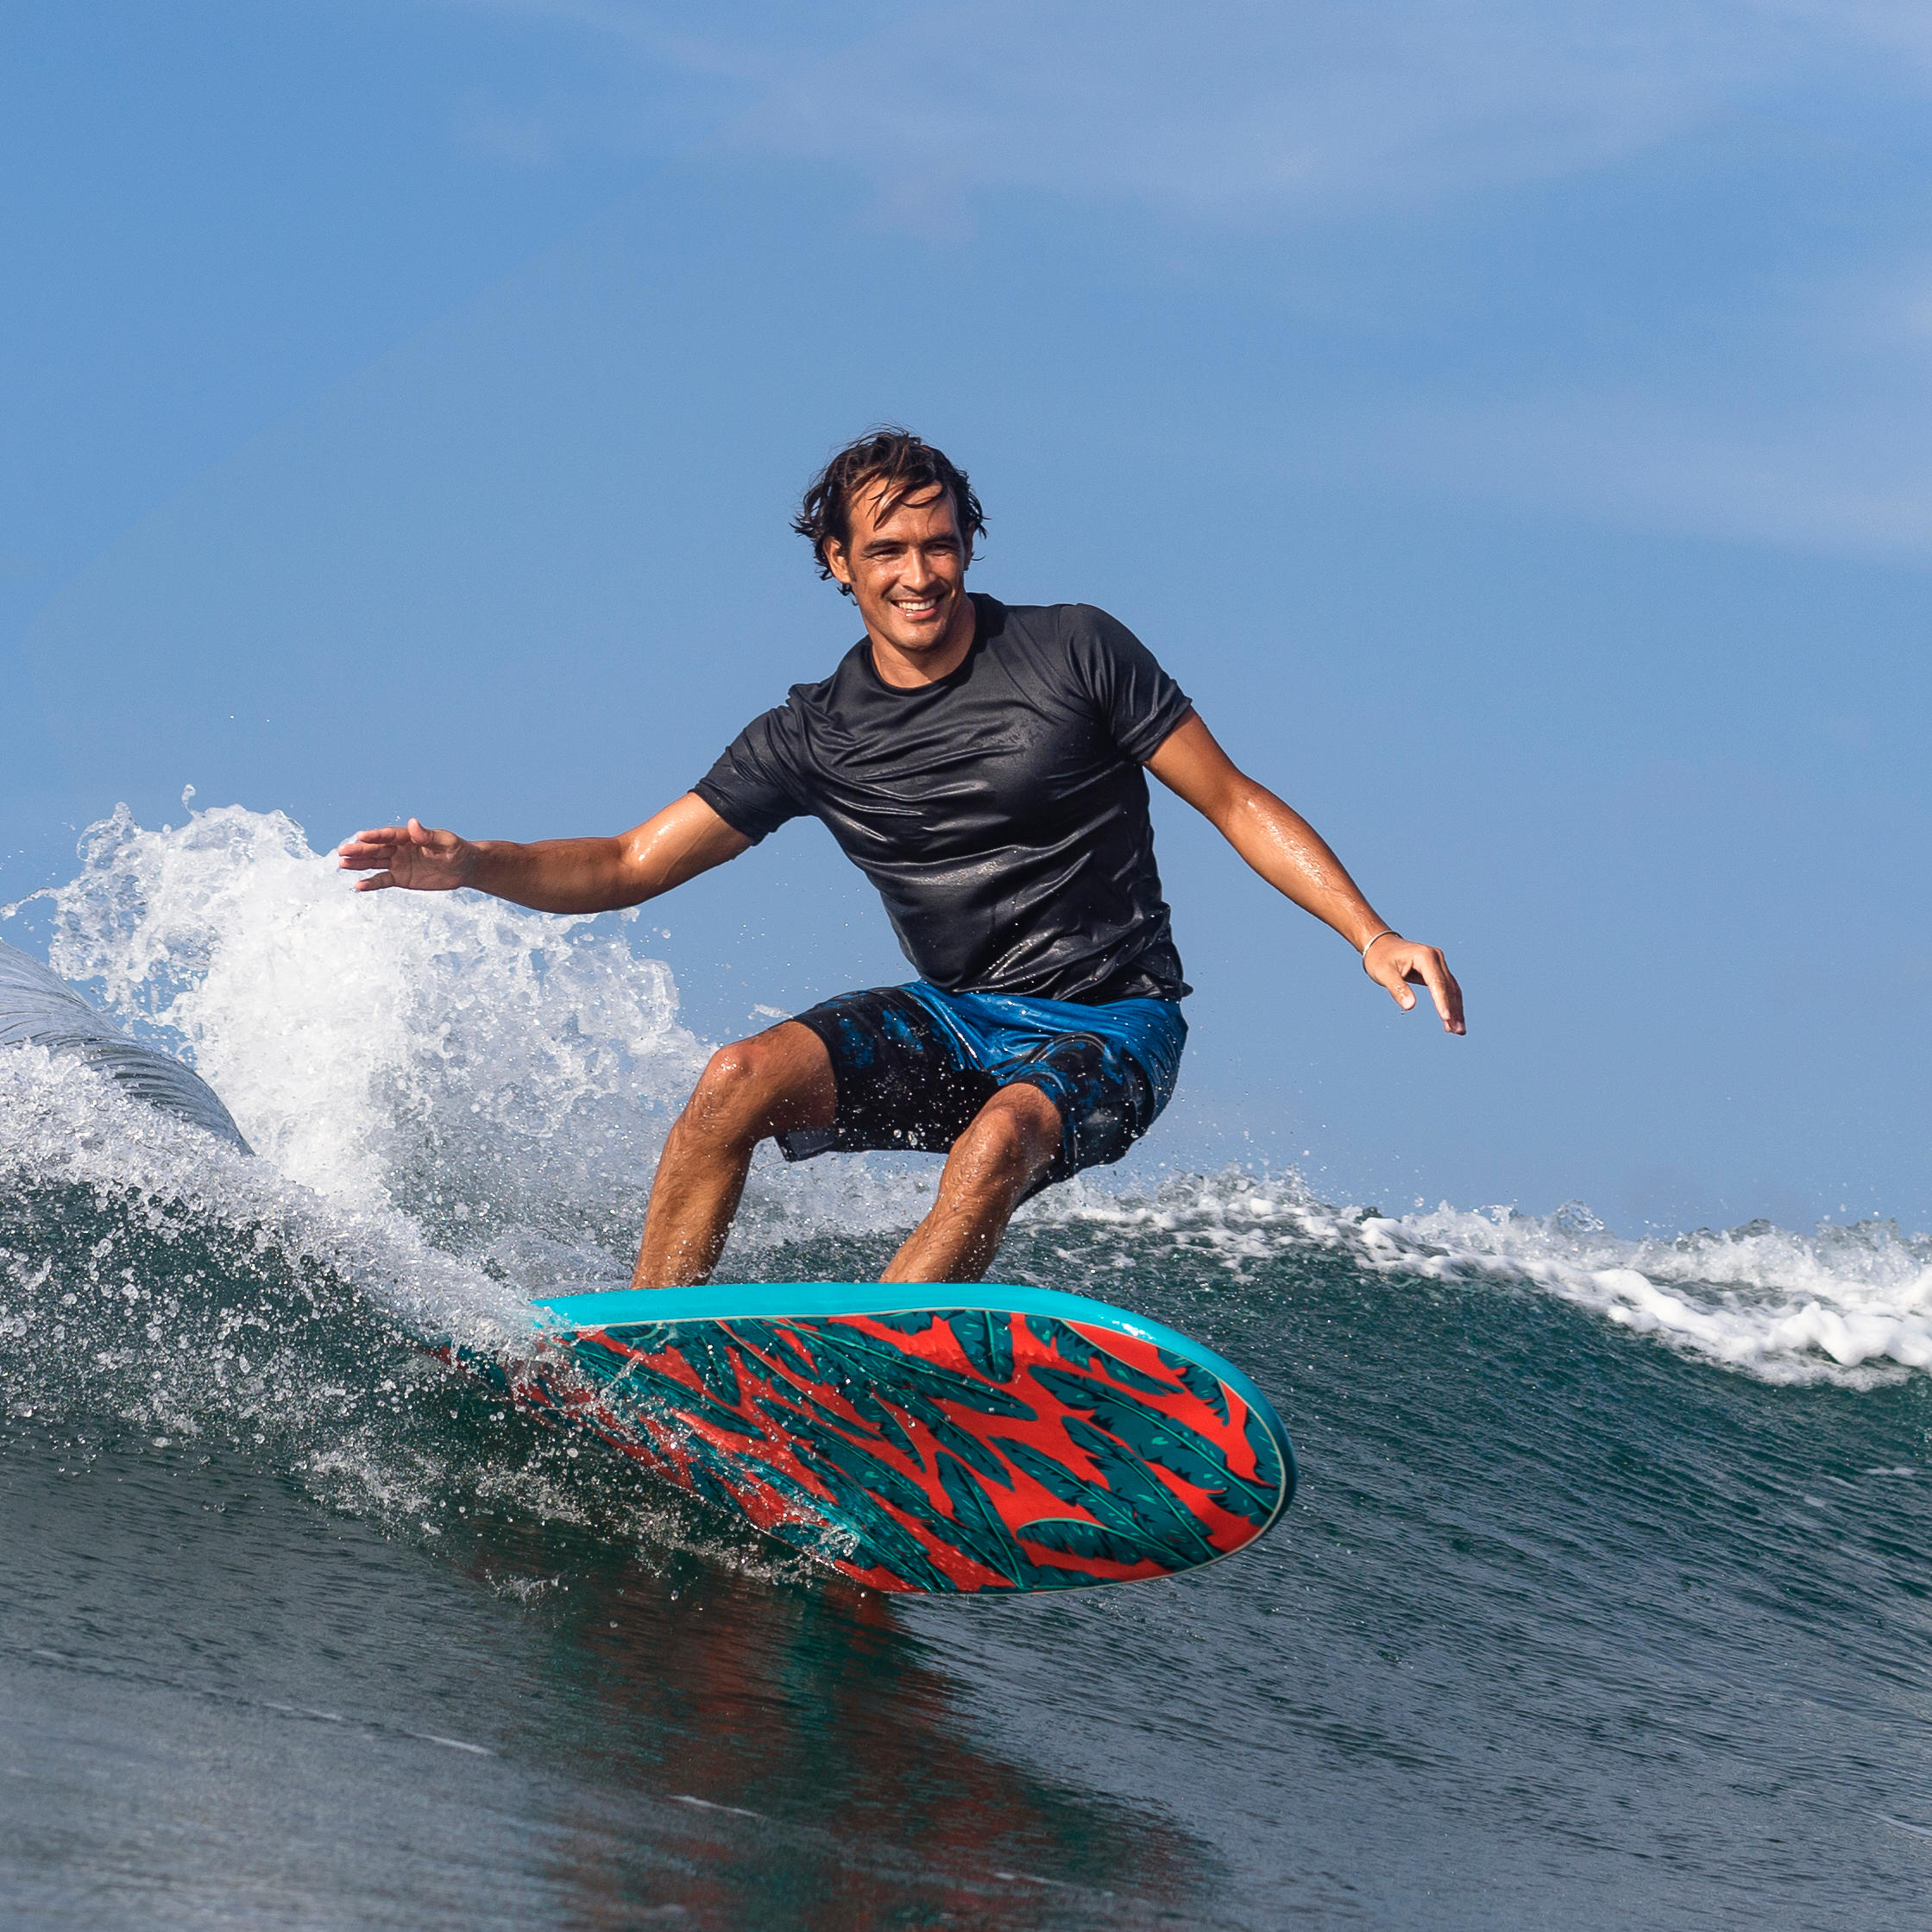 [ส่งฟรี ] SURFBOARD Surfing board เซิร์ฟบอร์ด กระดานโต้คลื่นโฟมรุ่น 500 ขนาด 7 ฟุต 8 นิ้ว มาพร้อมสายโยง 1 อันและครีบ 3 อัน SURFBOARD Foam 7'8 500'. Supplied with a leash and three fins. surfskate surfboard fin wakeboard ของแท้ รับประกัน